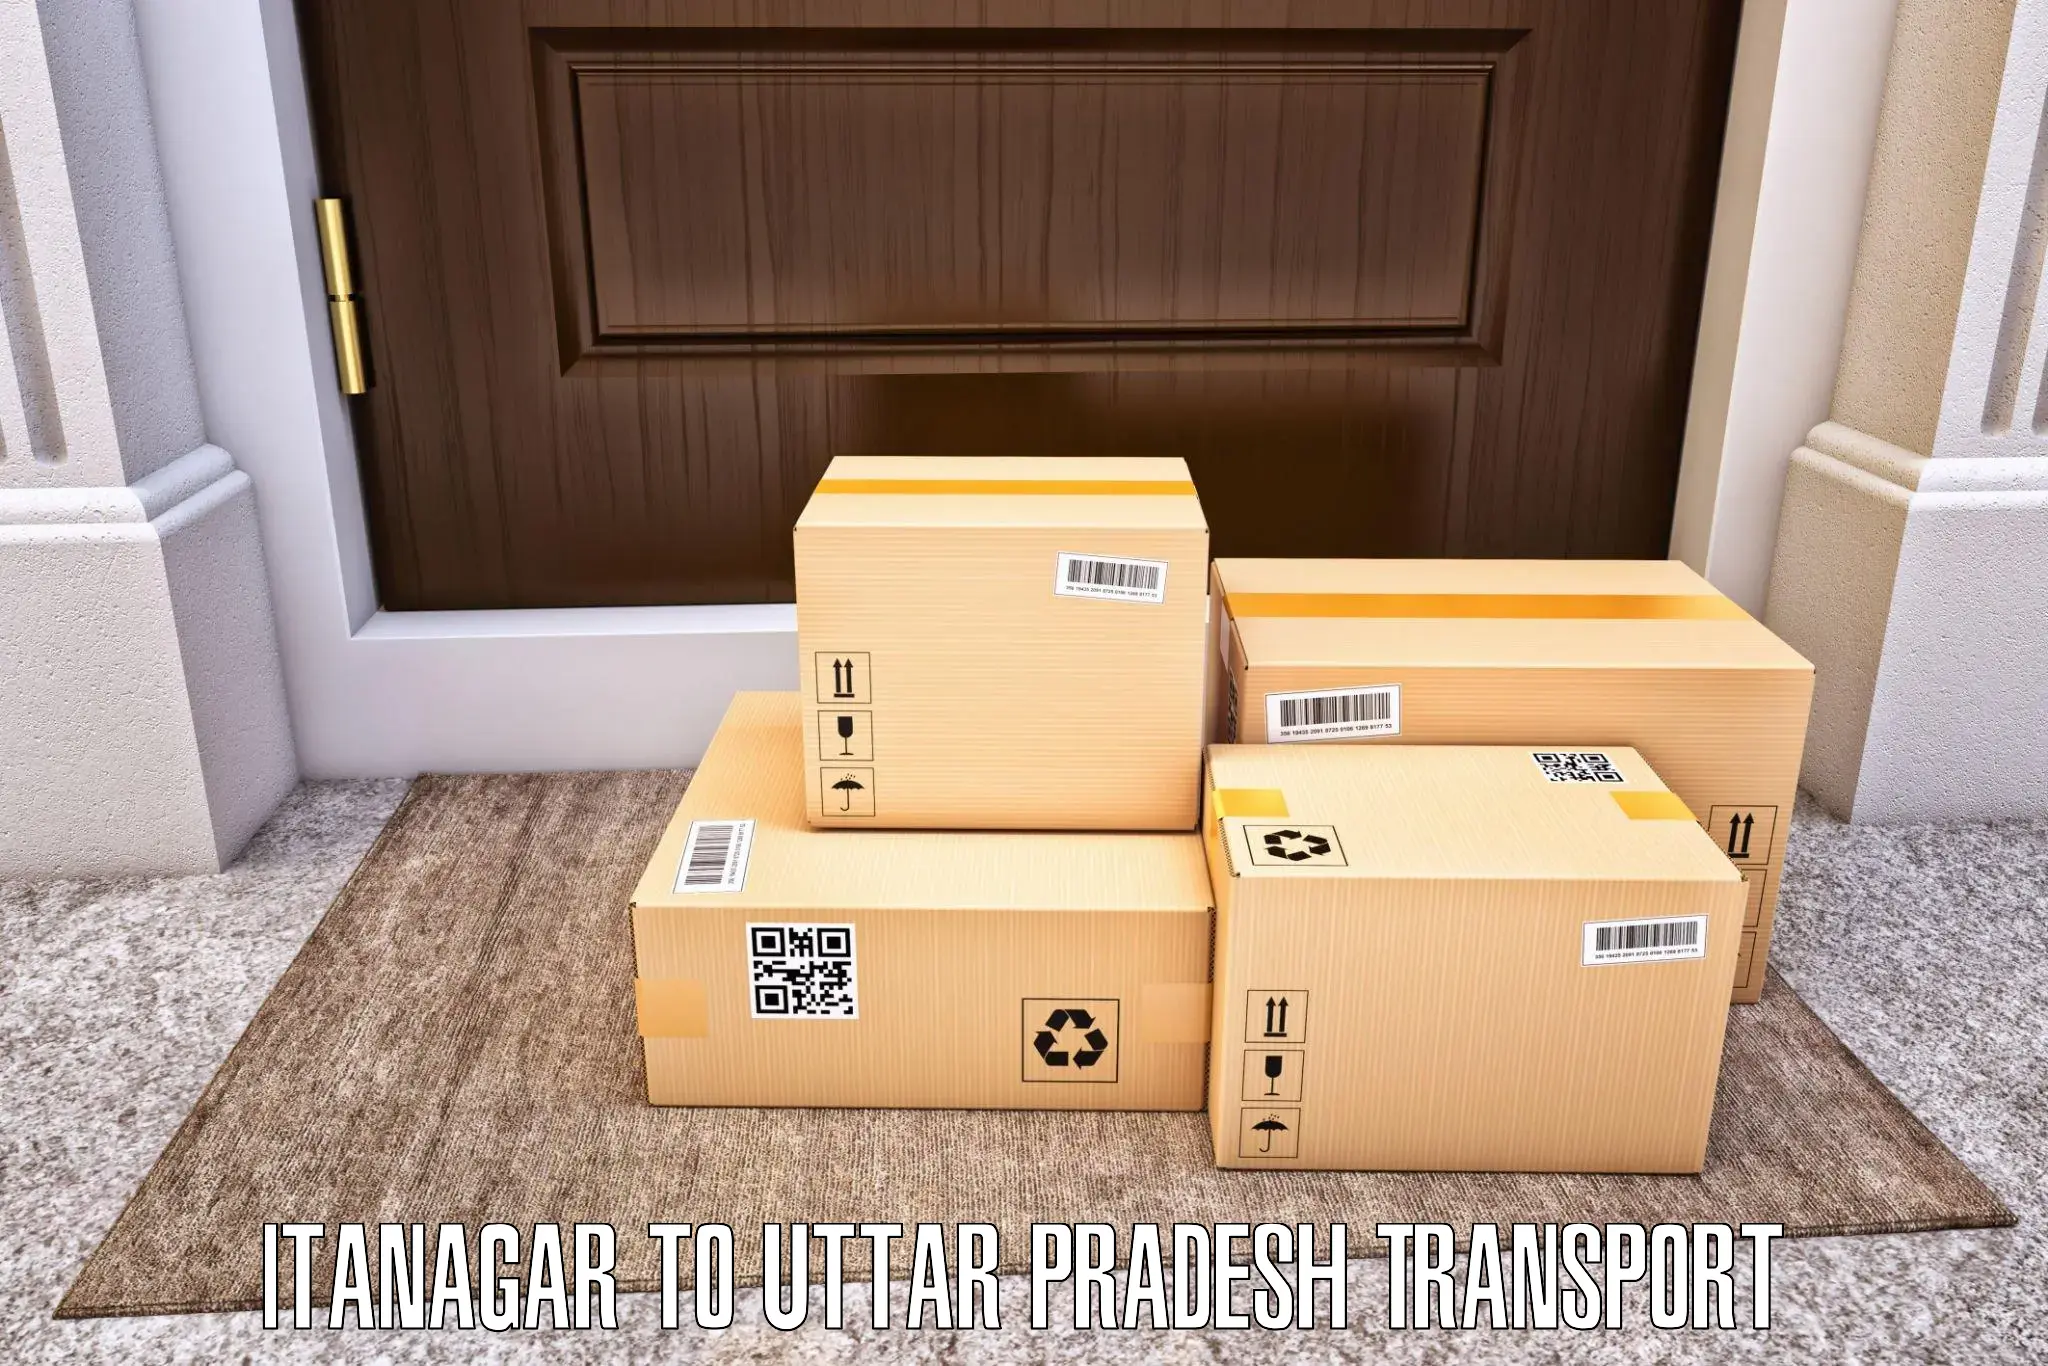 Daily parcel service transport Itanagar to Shankargarh